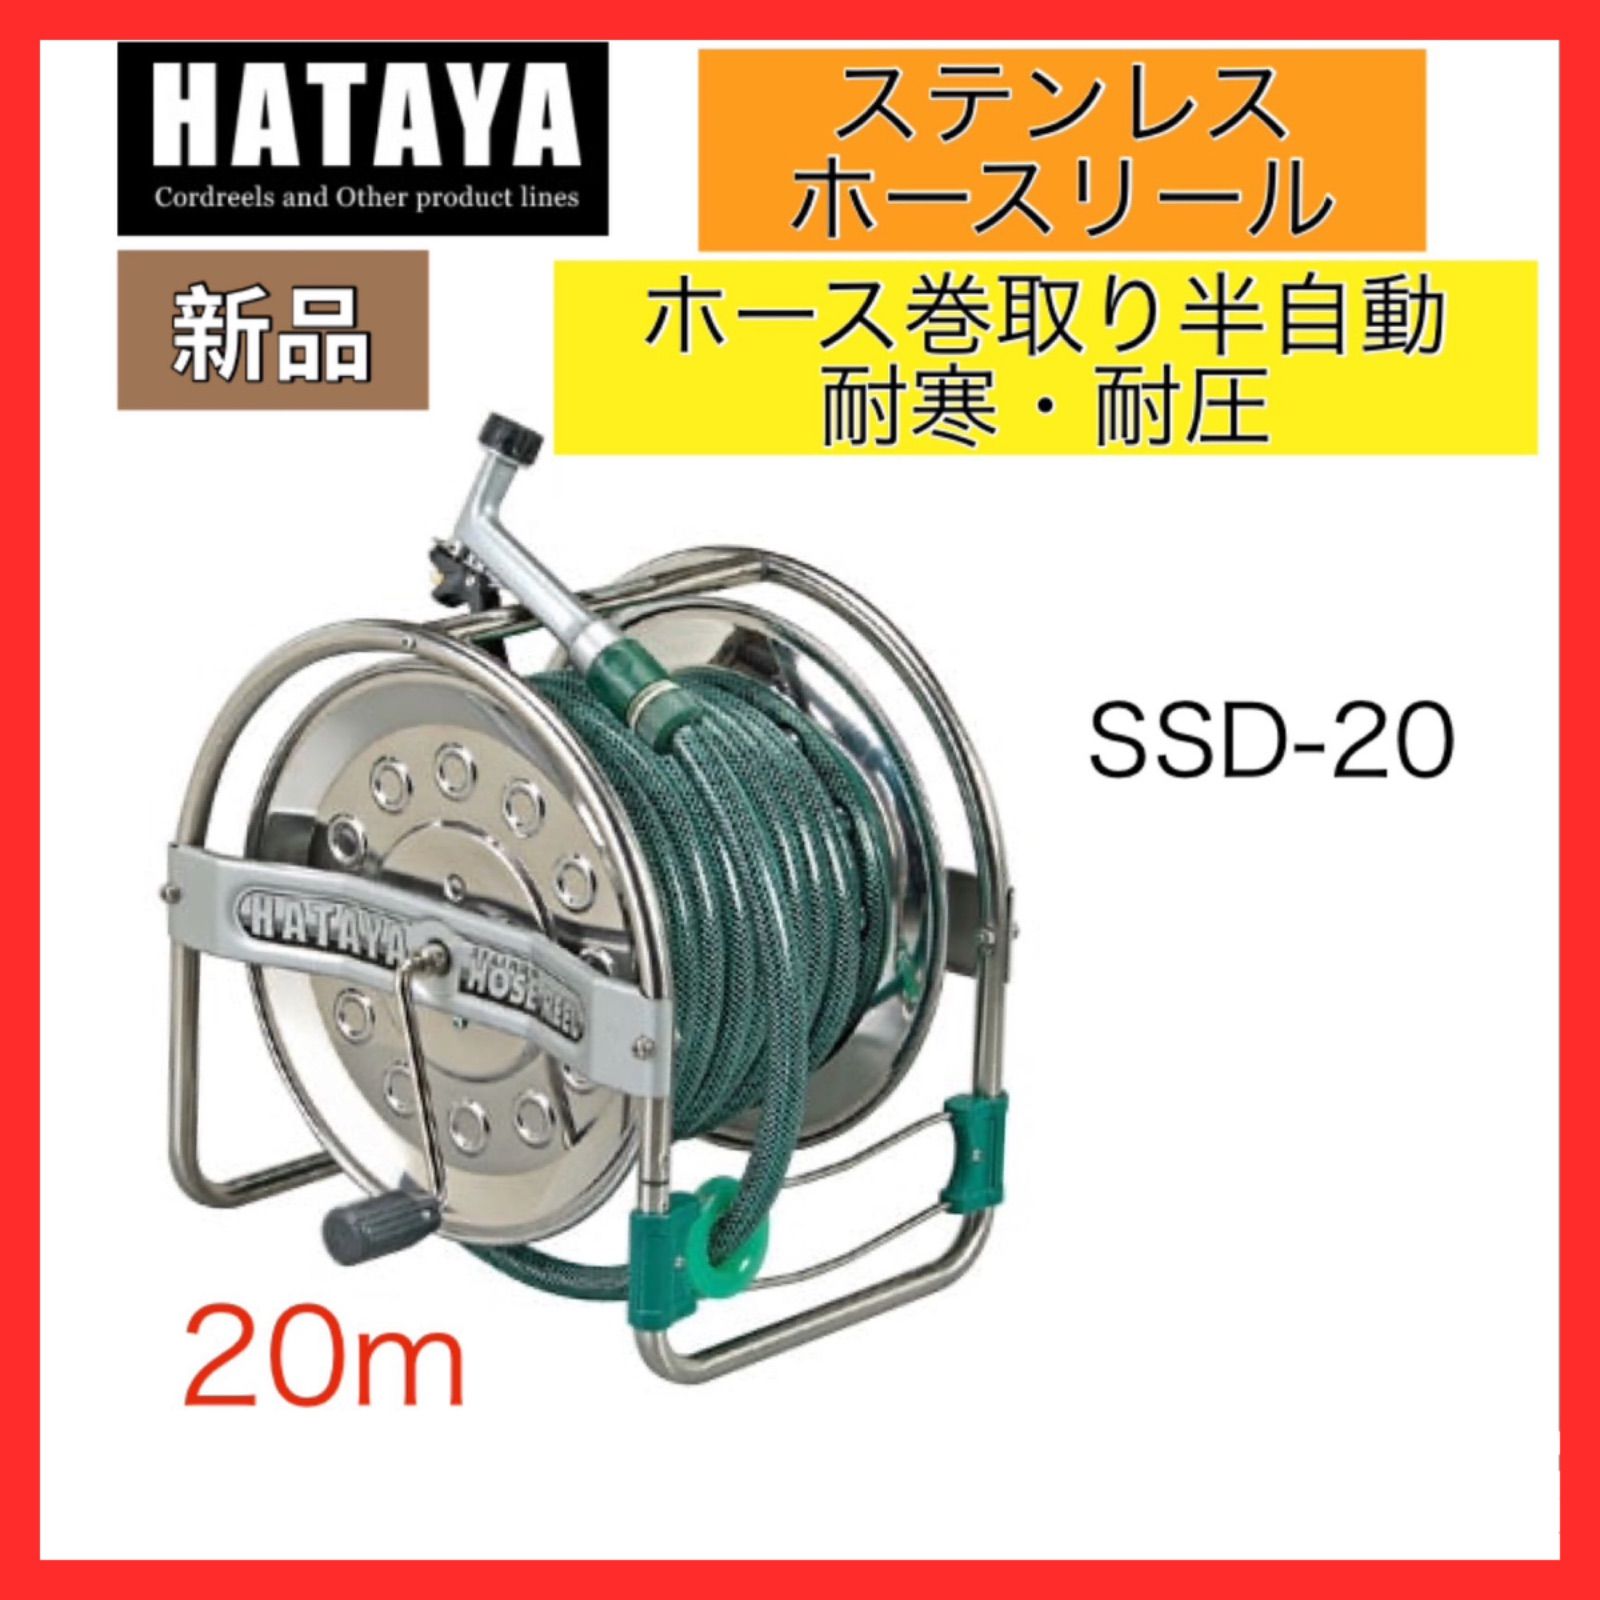 ハヤタ HATAYA ステンレス ホースリール SSD-20 20m 普及タイプ - メルカリ